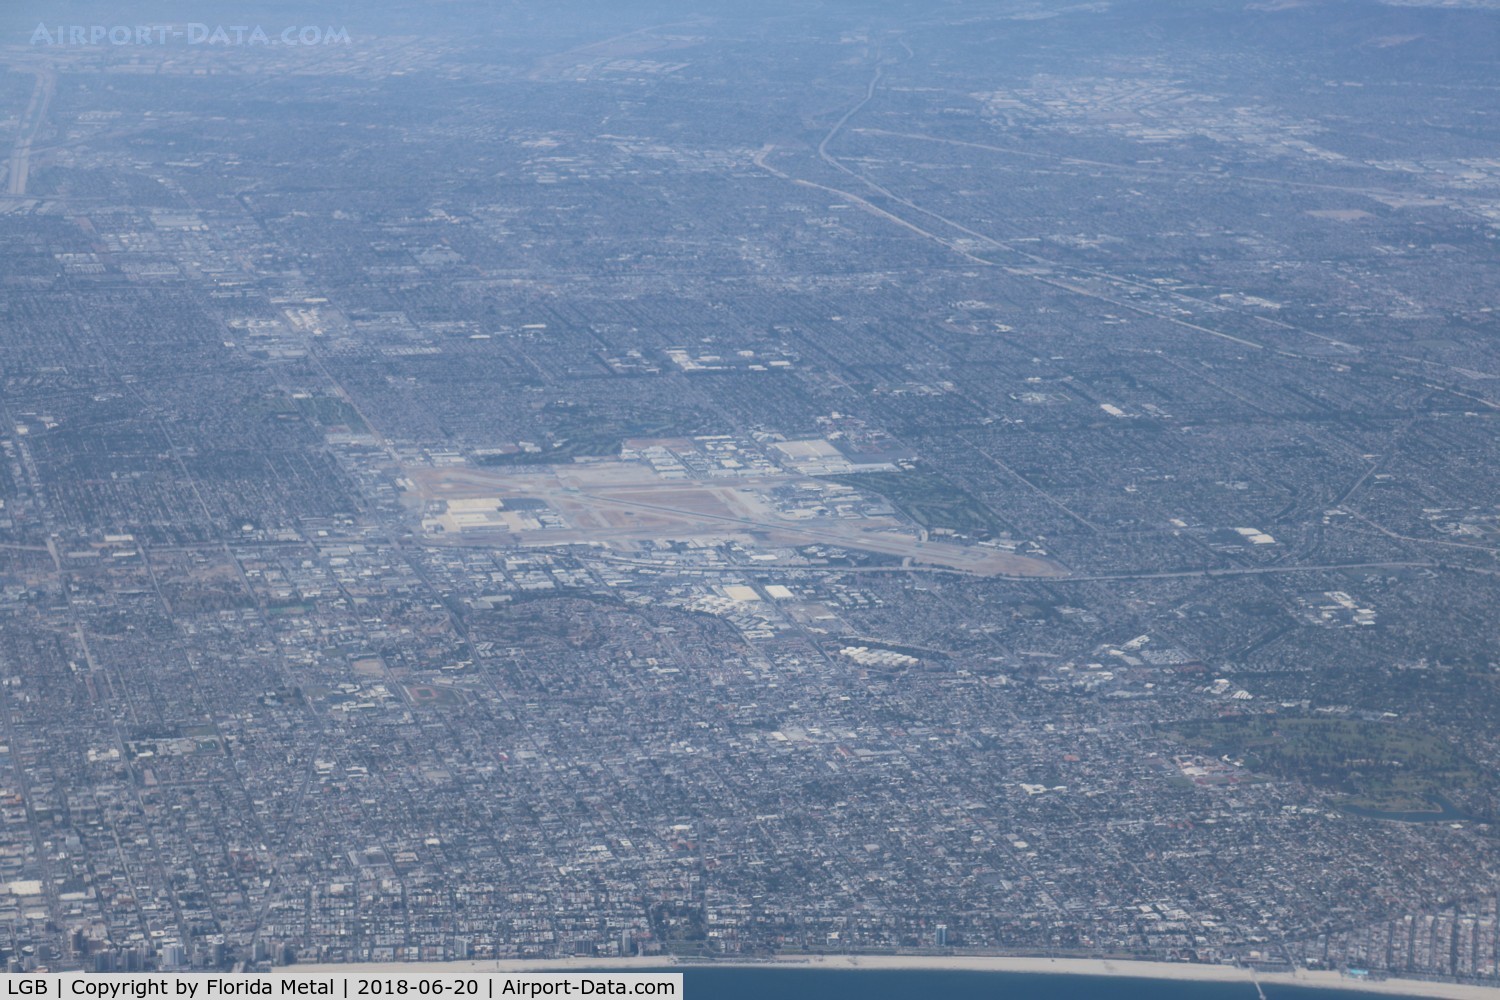 Long Beach /daugherty Field/ Airport (LGB) - Long Beach